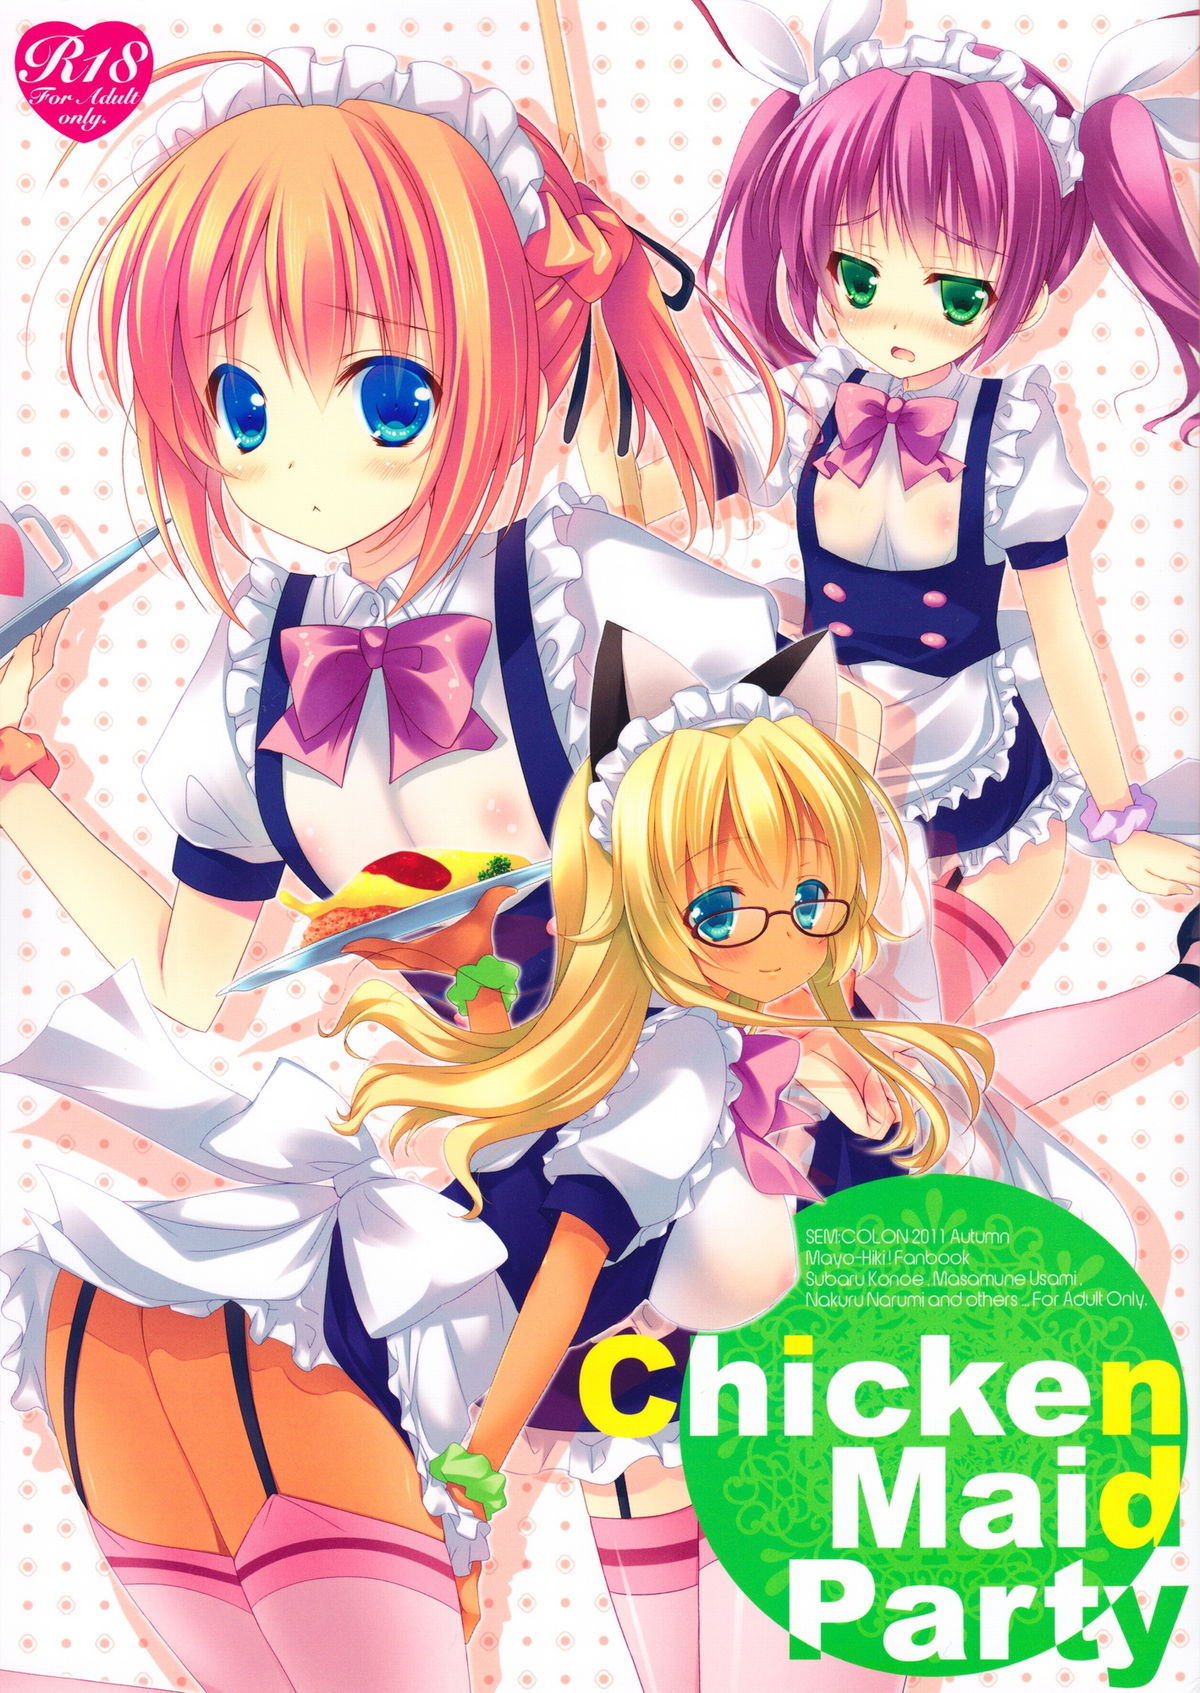 SEMCOLON Mitsu King Chicken Maid Party Mayo Chiki English desudesu 741103 0001